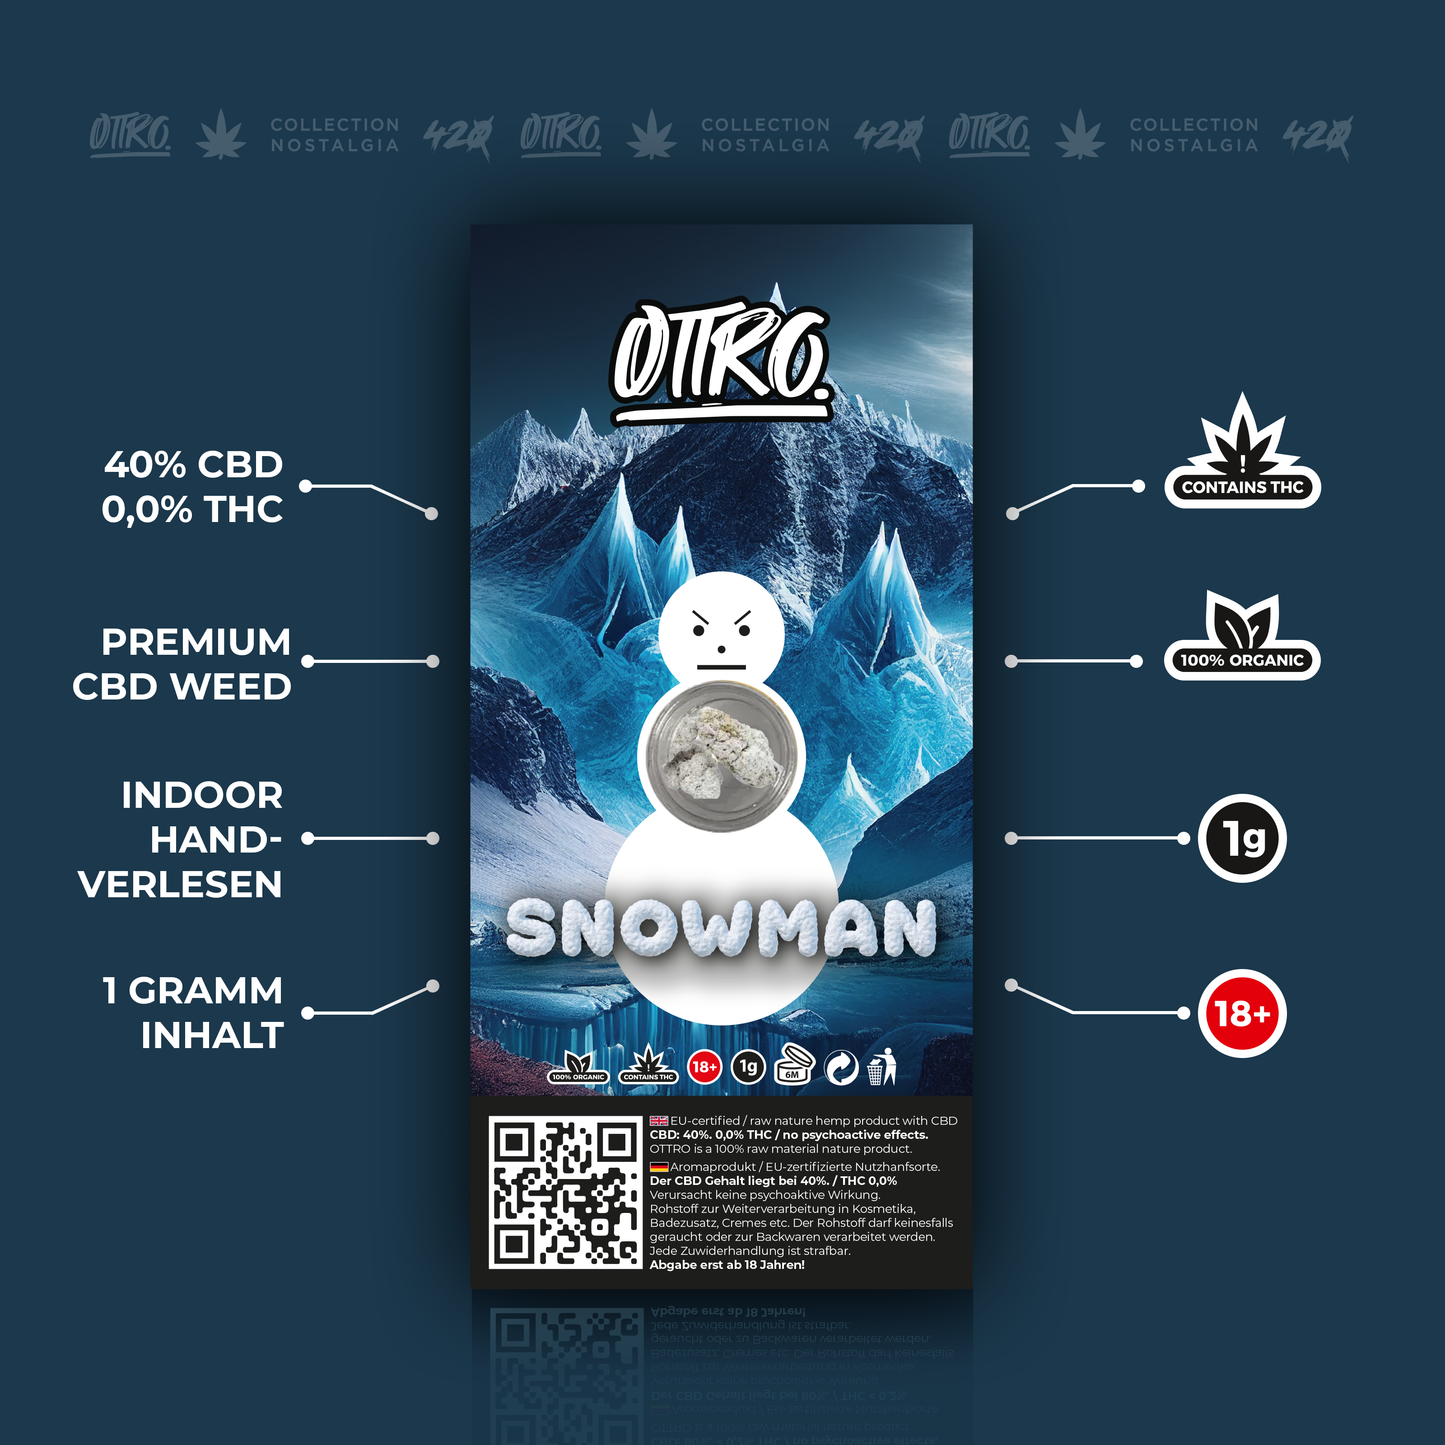 Ottro Produkt SNOWMAN Beschreibungen